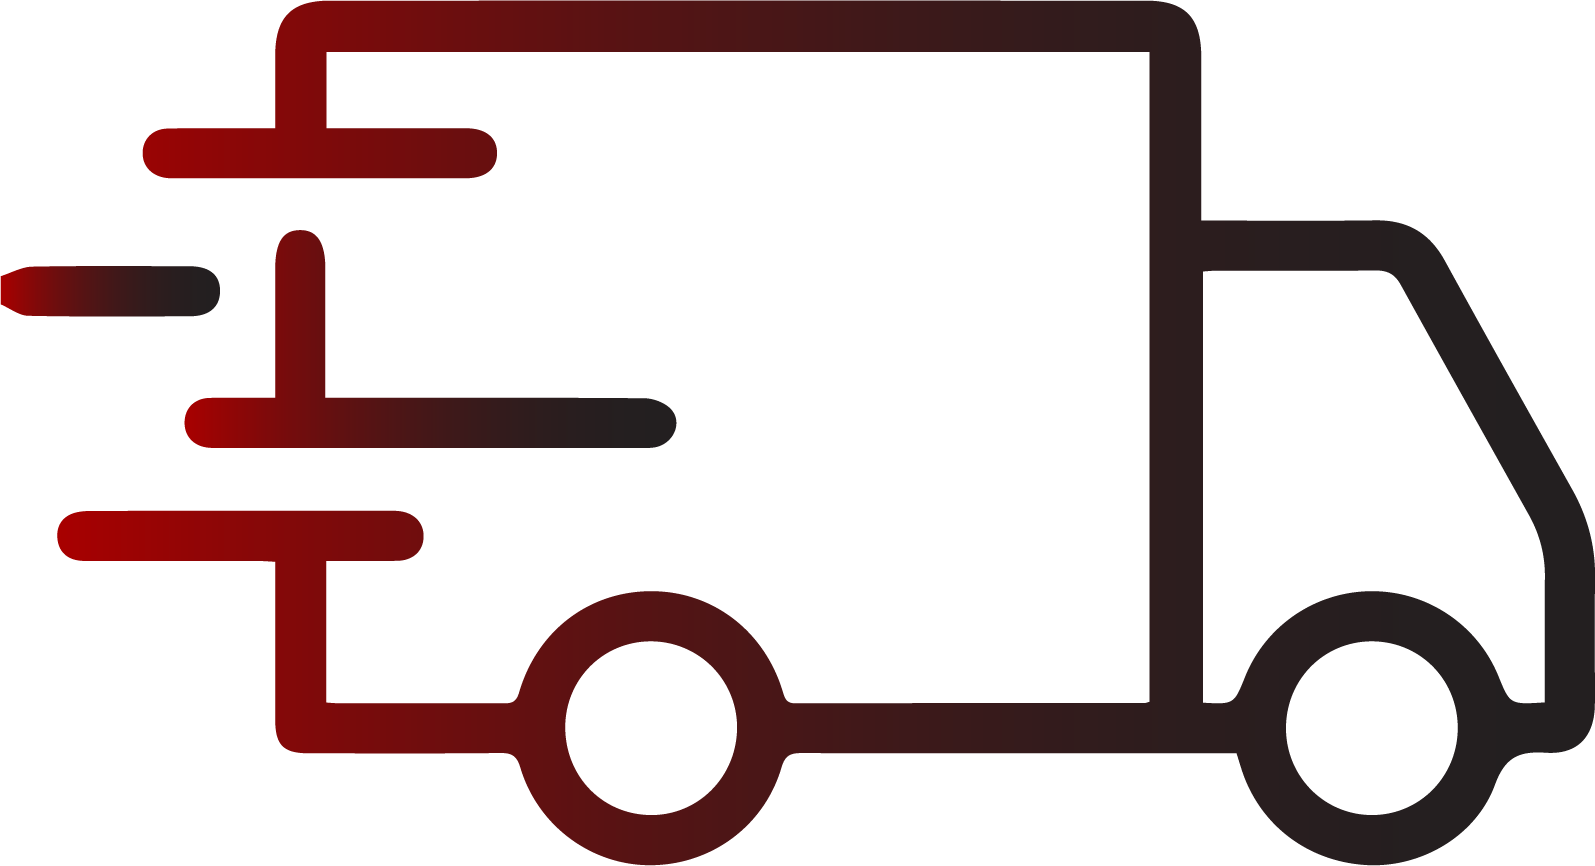 Eine Grafik, die einen fahrenden LKW und das Thema Transportlogistik symbolisiert.